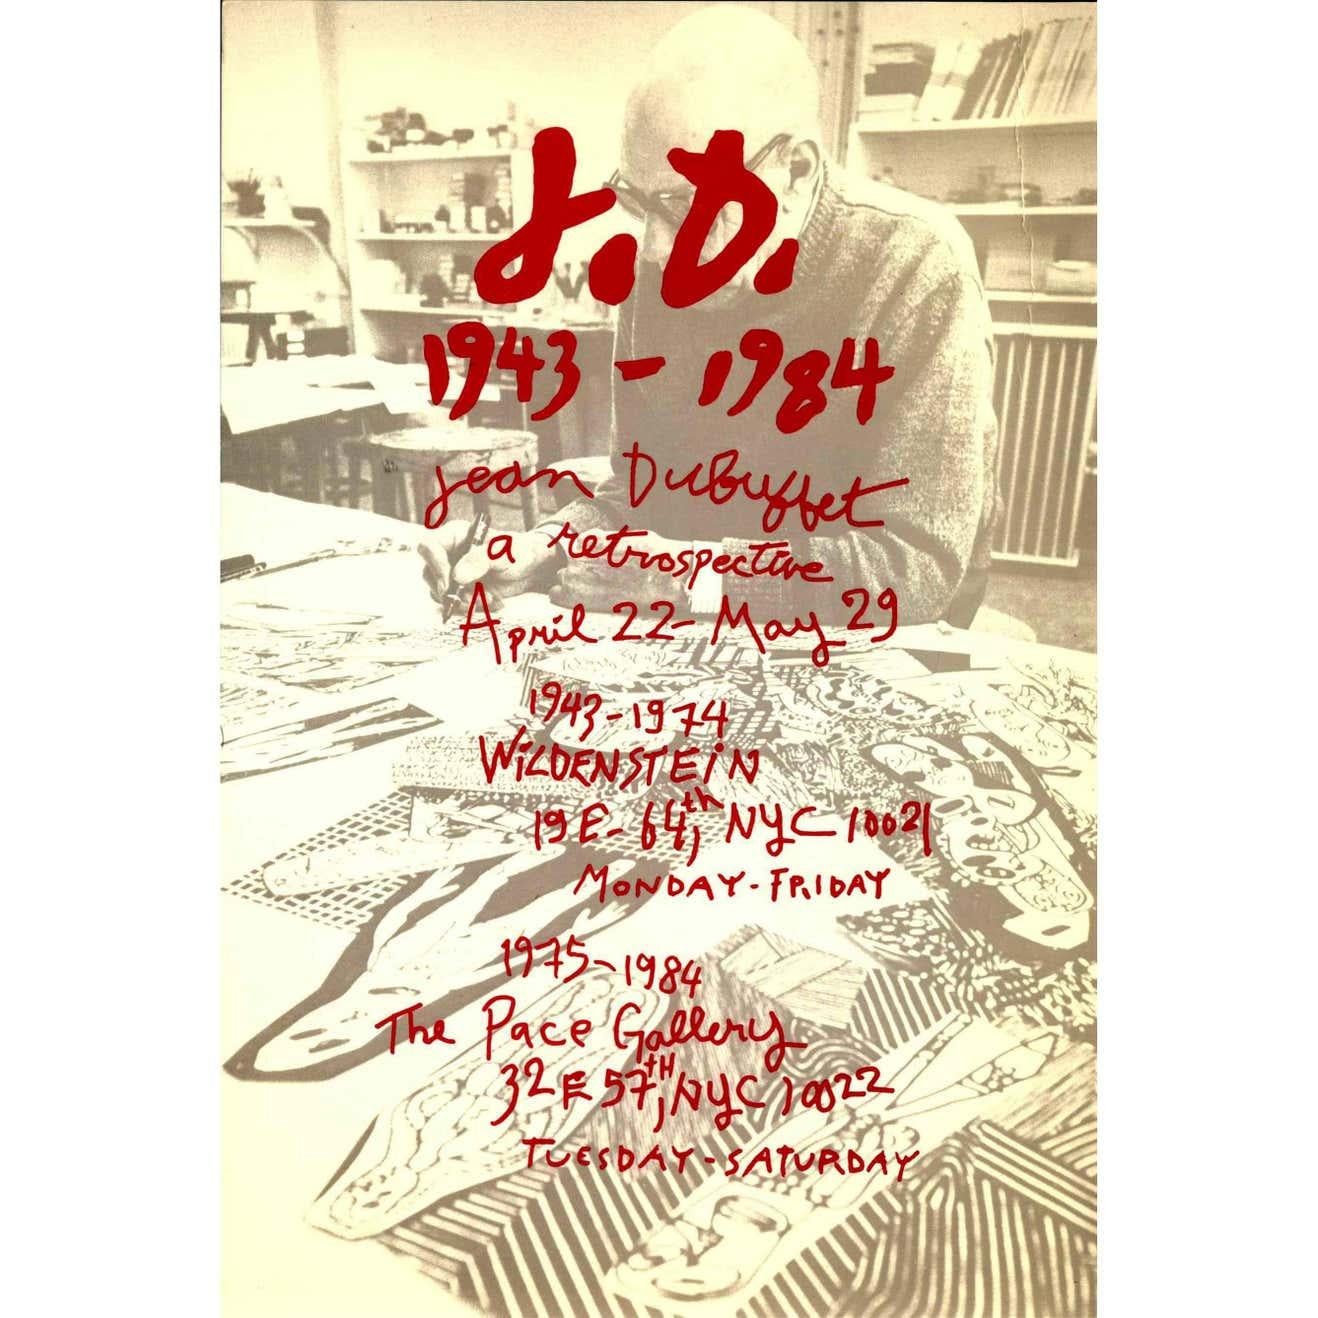 Vieille carte d'annonce originale pour : 
Jean Dubuffet : une rétrospective : The Pace Gallery, New York 1987.
Une enquête complète en deux parties sur la vie de l'artiste : Du 22 avril au 29 mai 1987. 

Impression décalée ; non signé 
Mesures